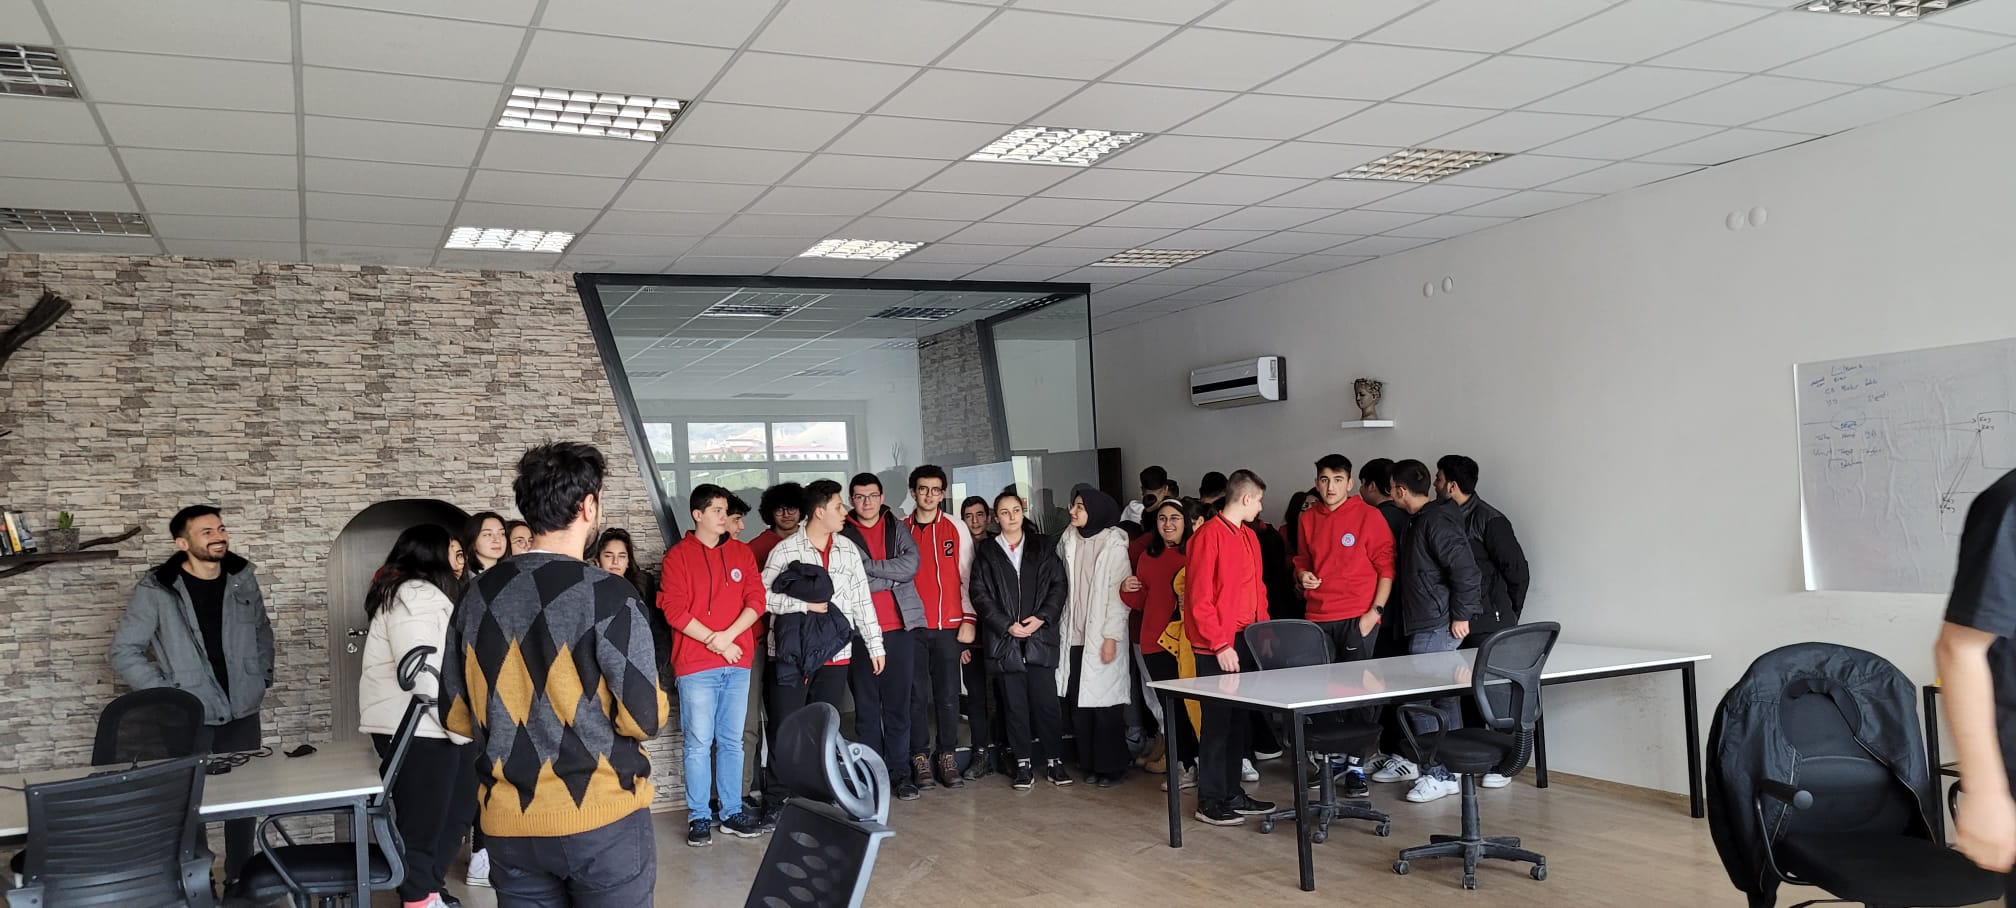 Sivas Cumhuriyet Üniversitesi Vakfı Koleji Mehmet Recai Taydemir Anadolu Fen Lisesi öğrencileri ve öğretmenleri Cumhuriyet Teknokent’i ziyaret etti